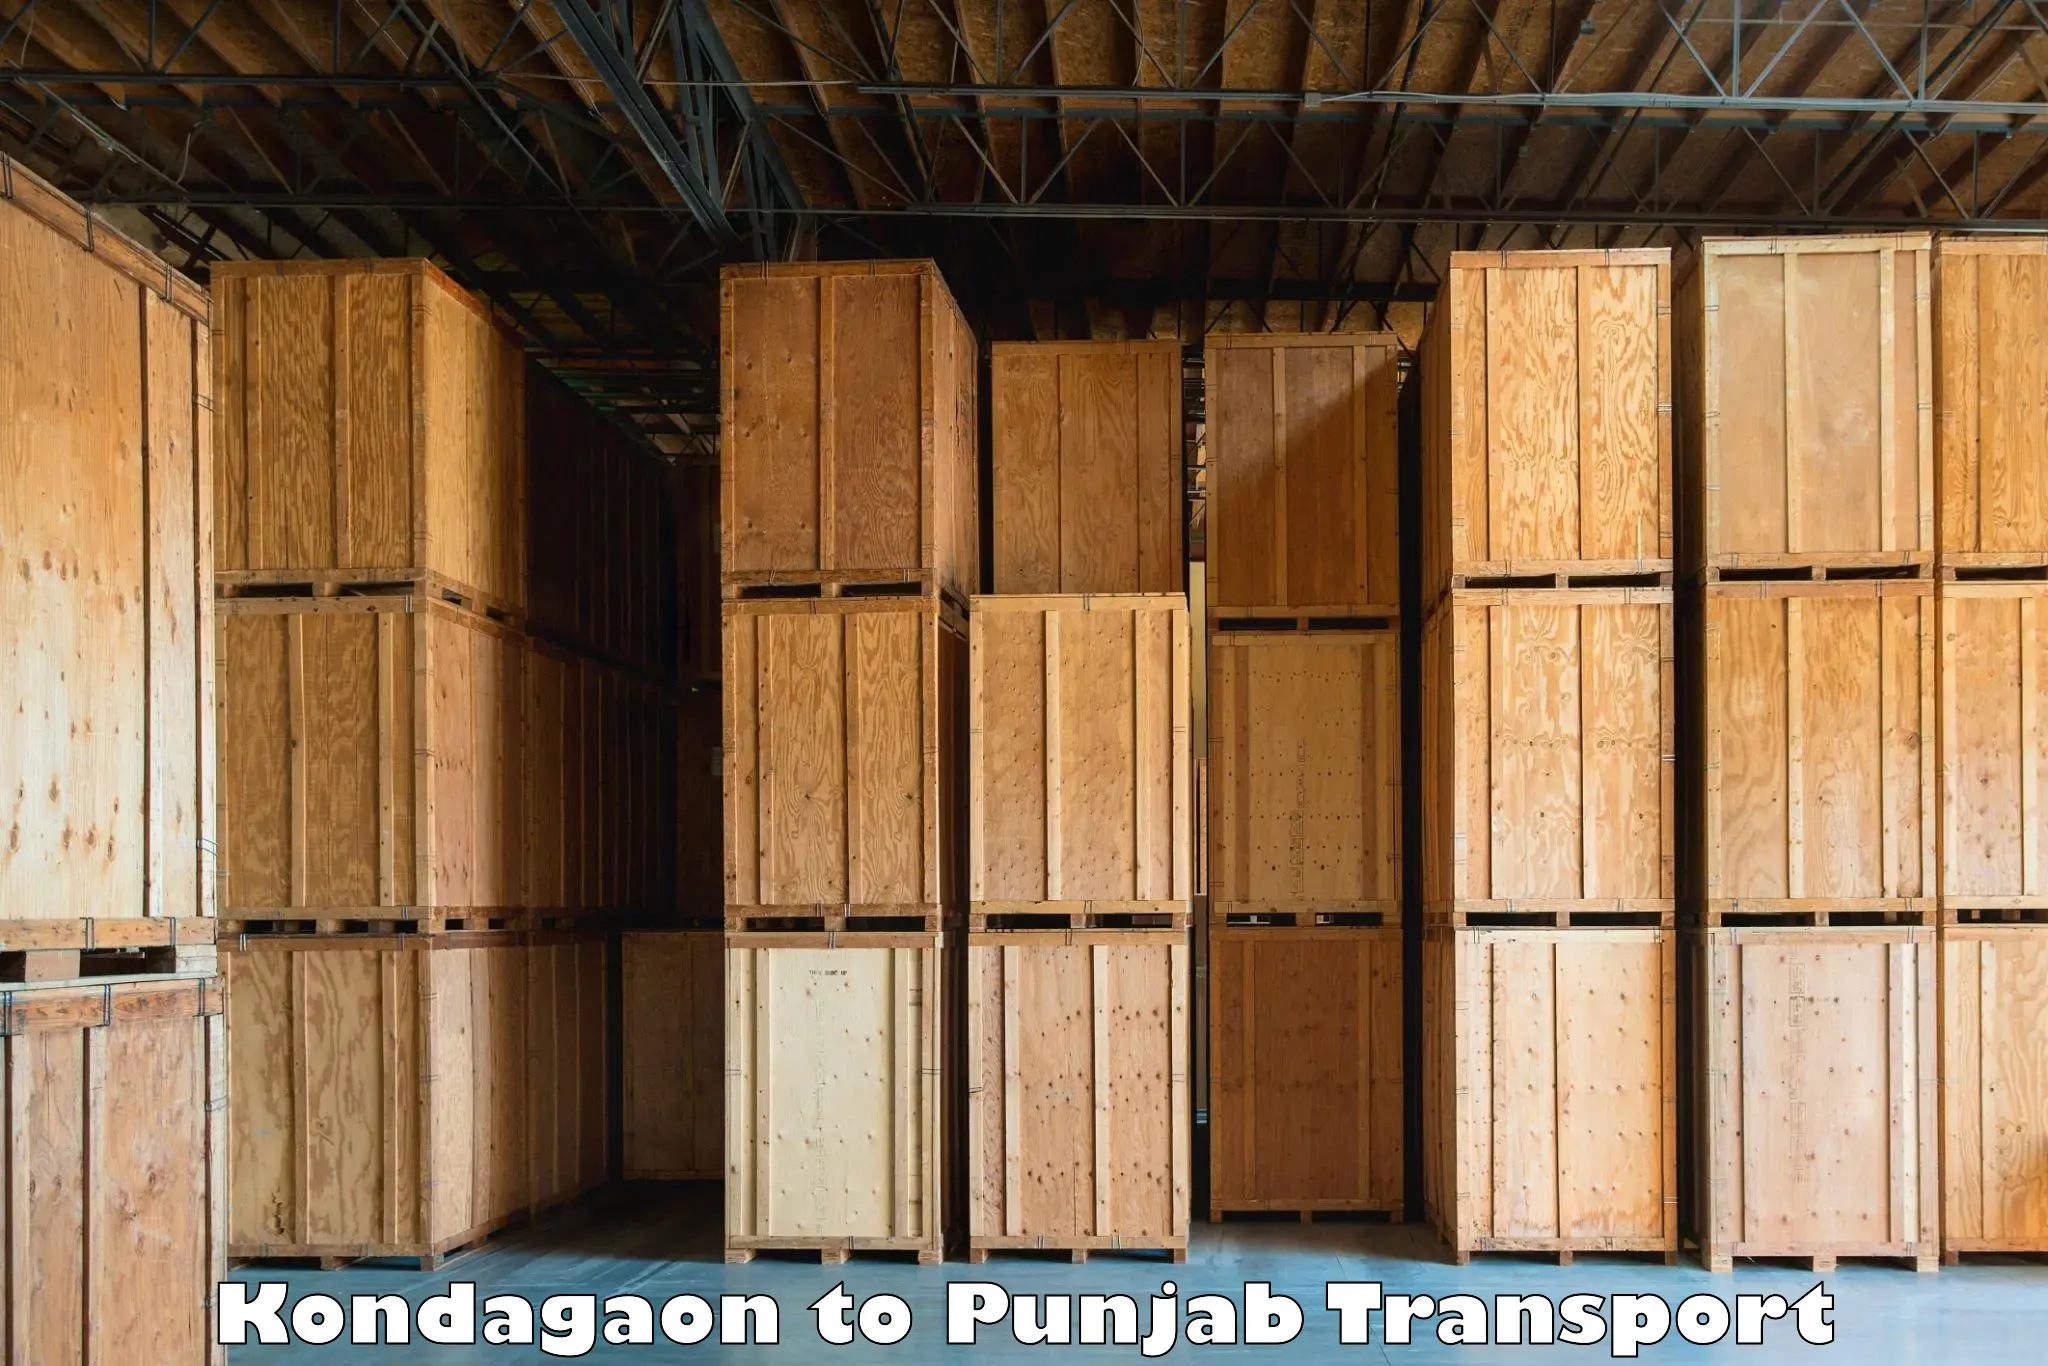 Parcel transport services Kondagaon to Jalandhar